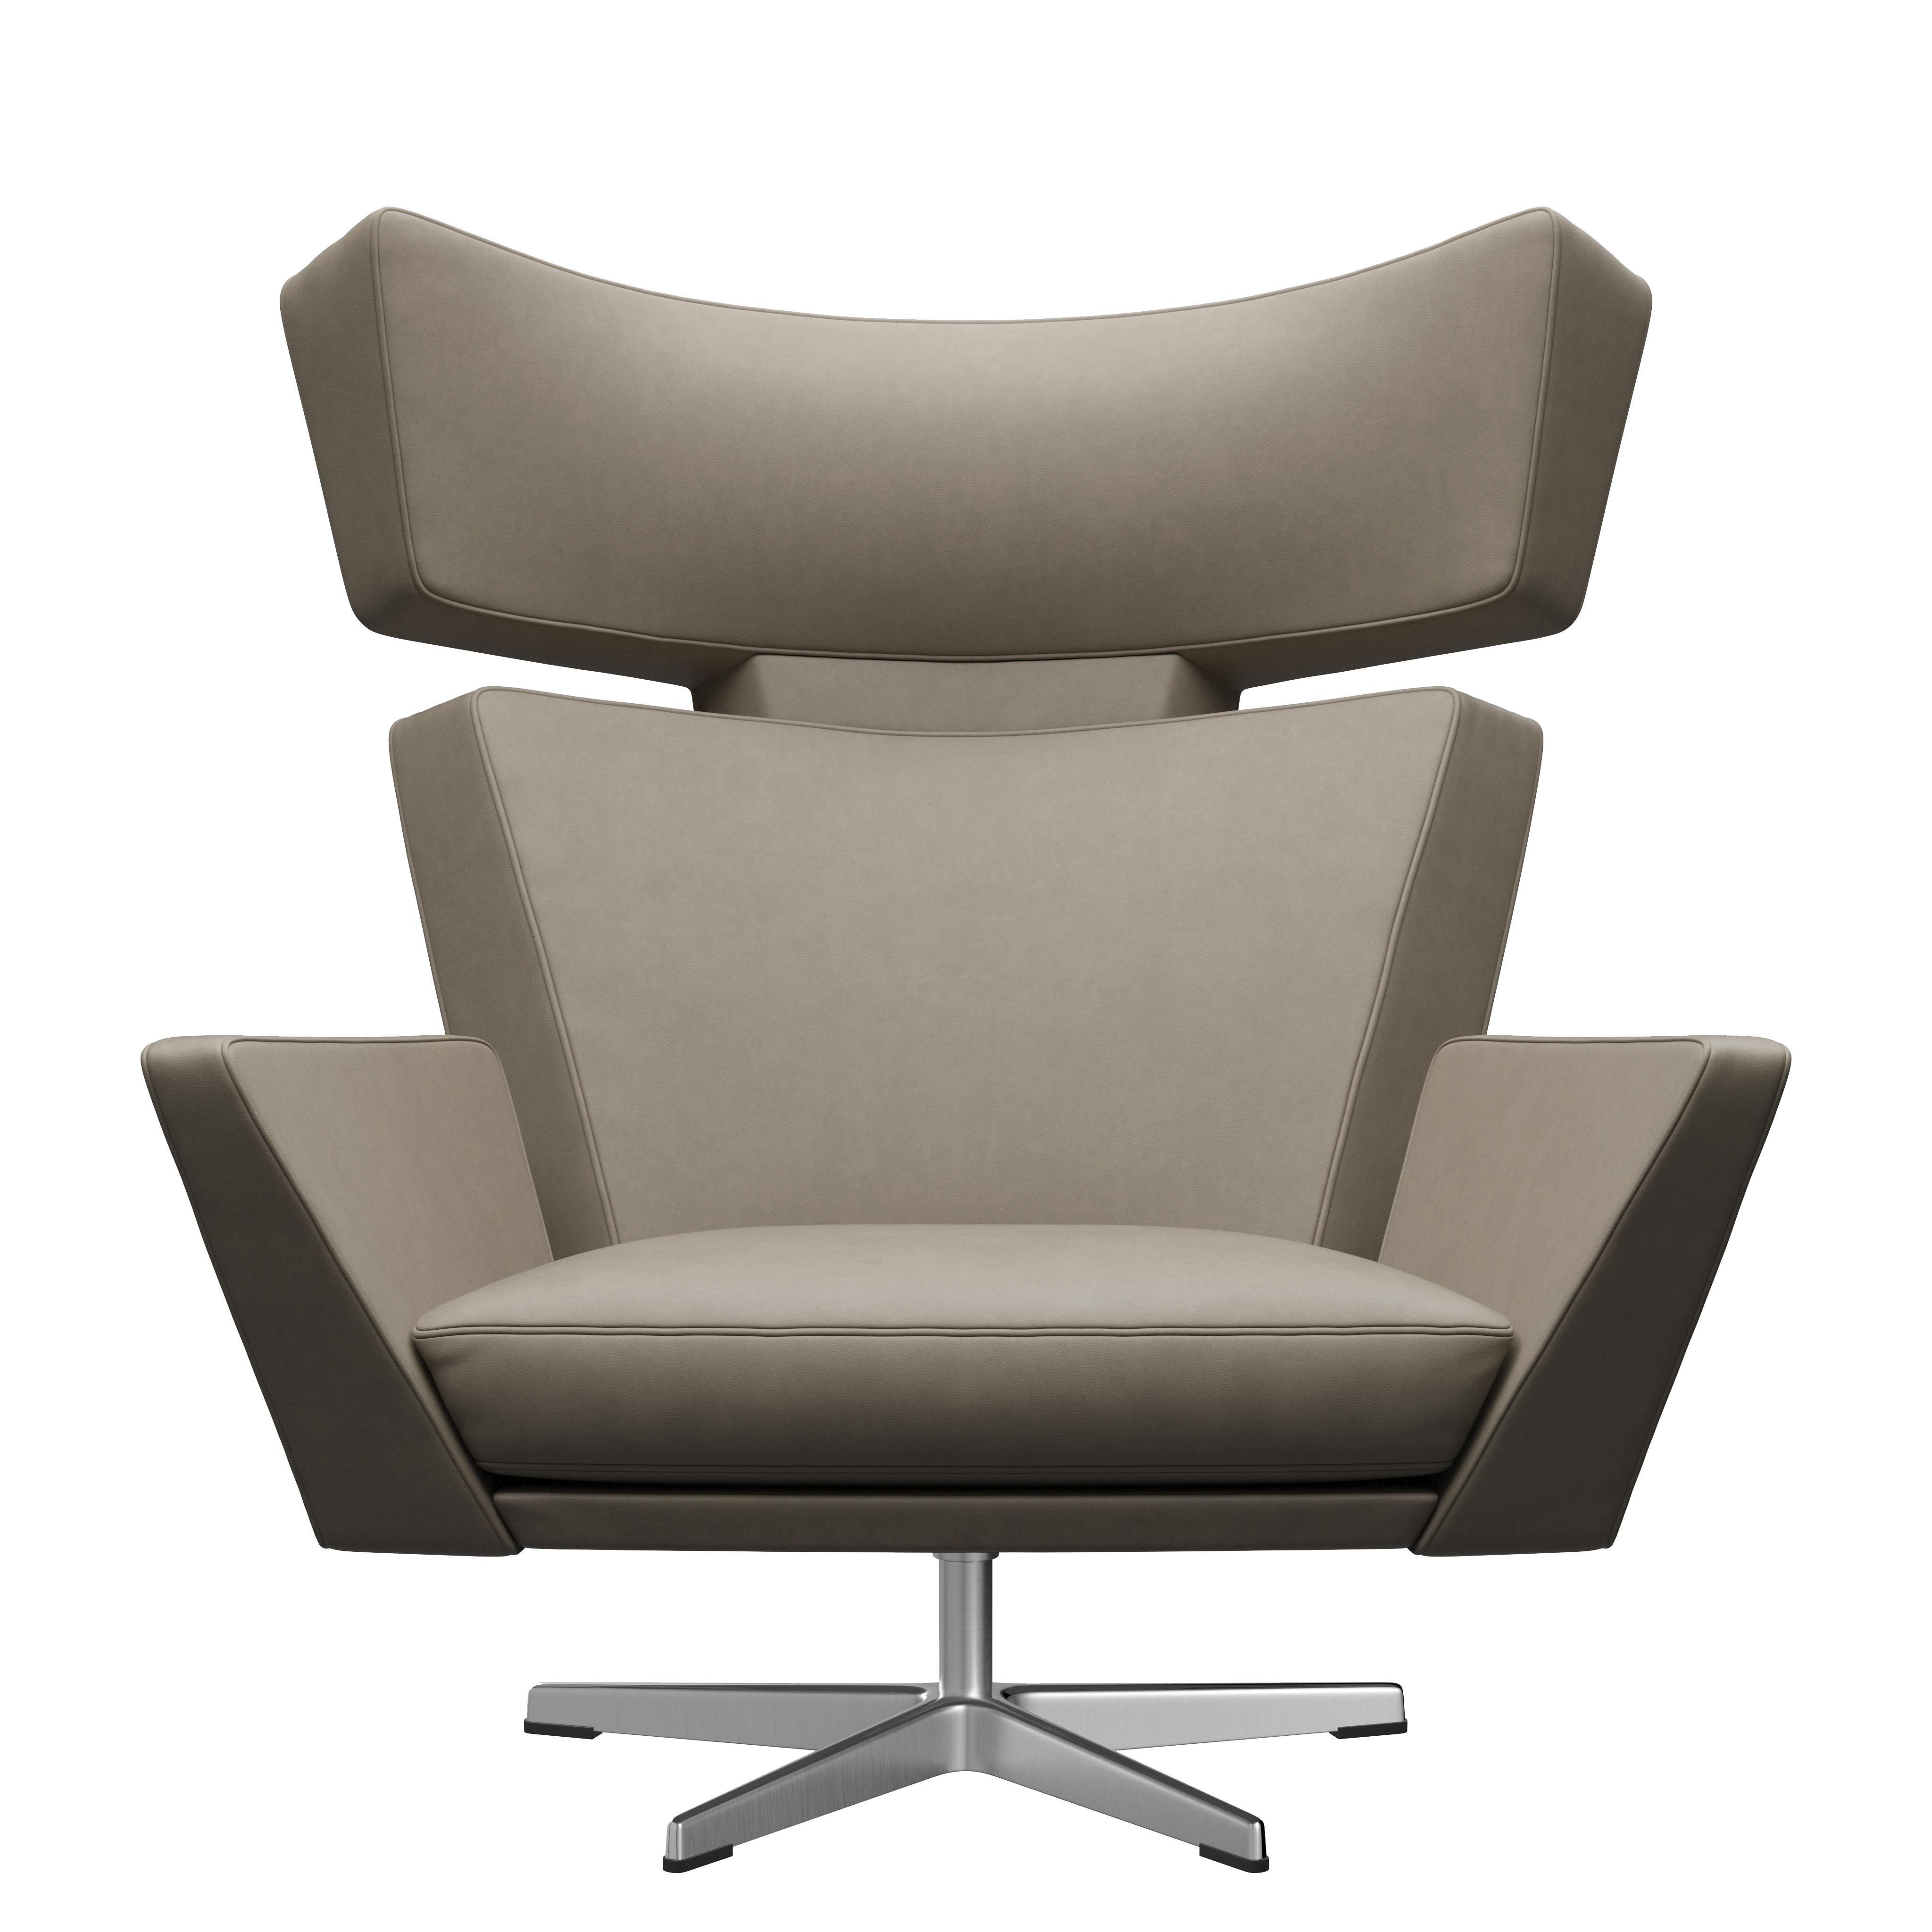 Arne Jacobsen 'Oksen' Chair for Fritz Hansen in Essential Leather Upholstery For Sale 7